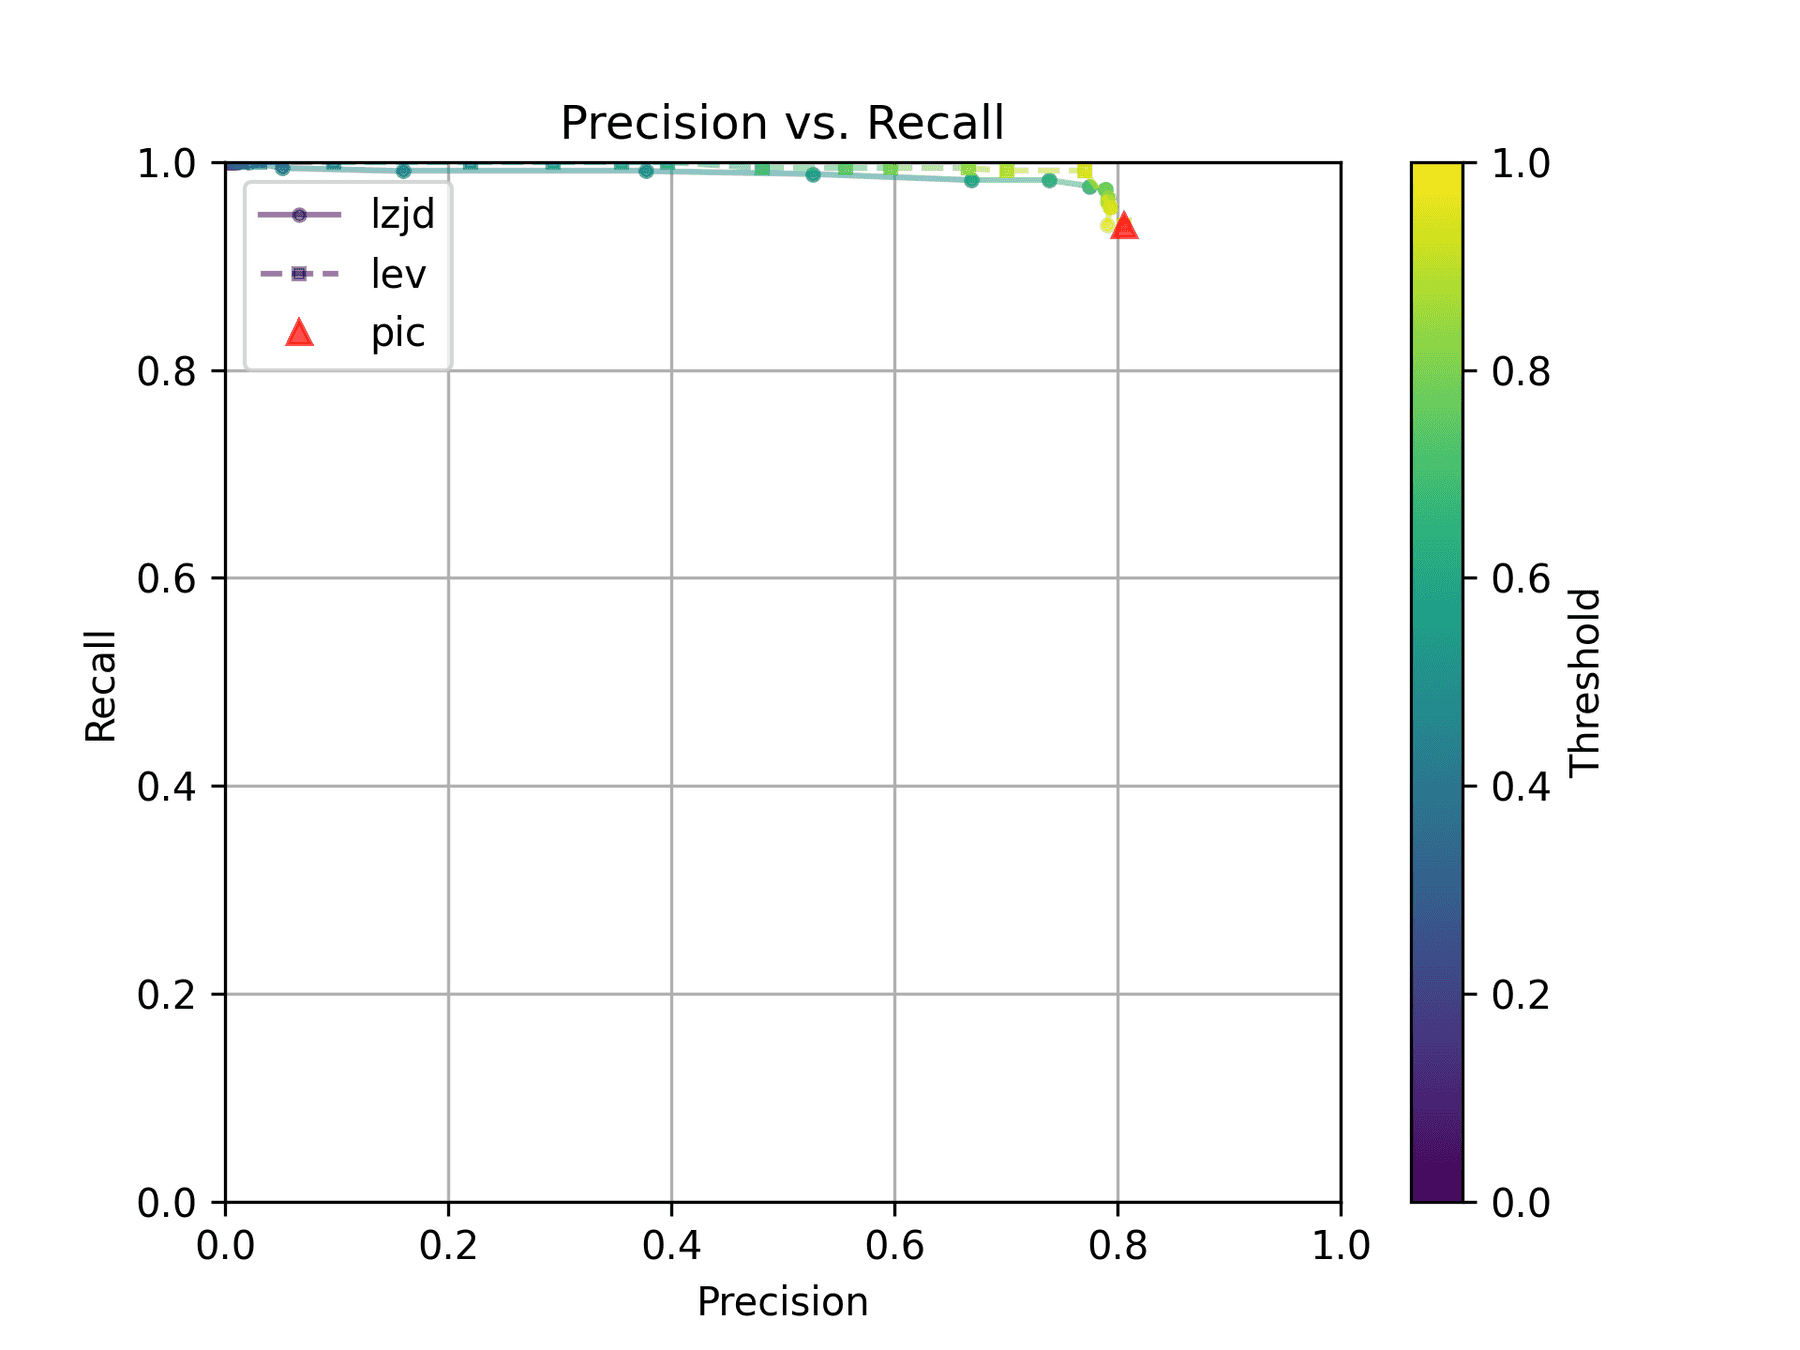 Precision vs. Recall plot for "openssl 1.1.1q vs 1.1.1w"